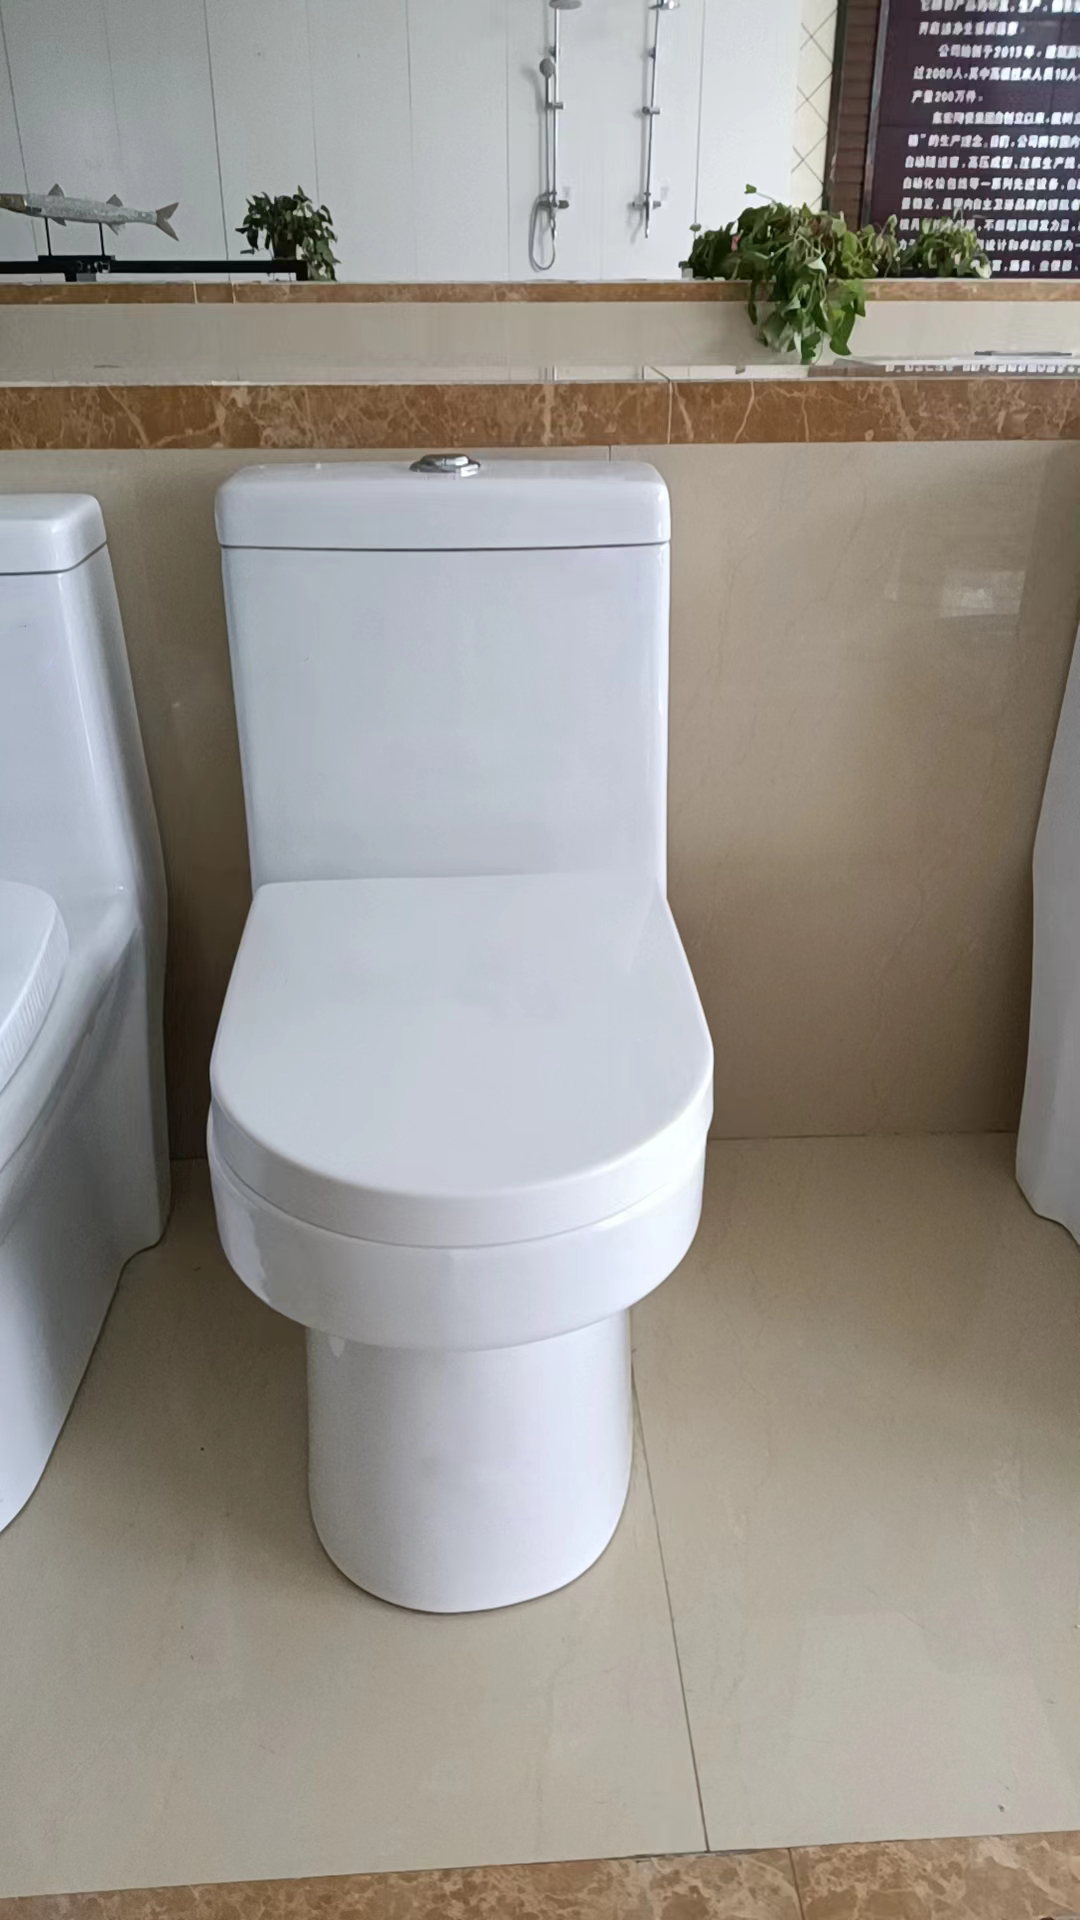 CT319 toilet (4)